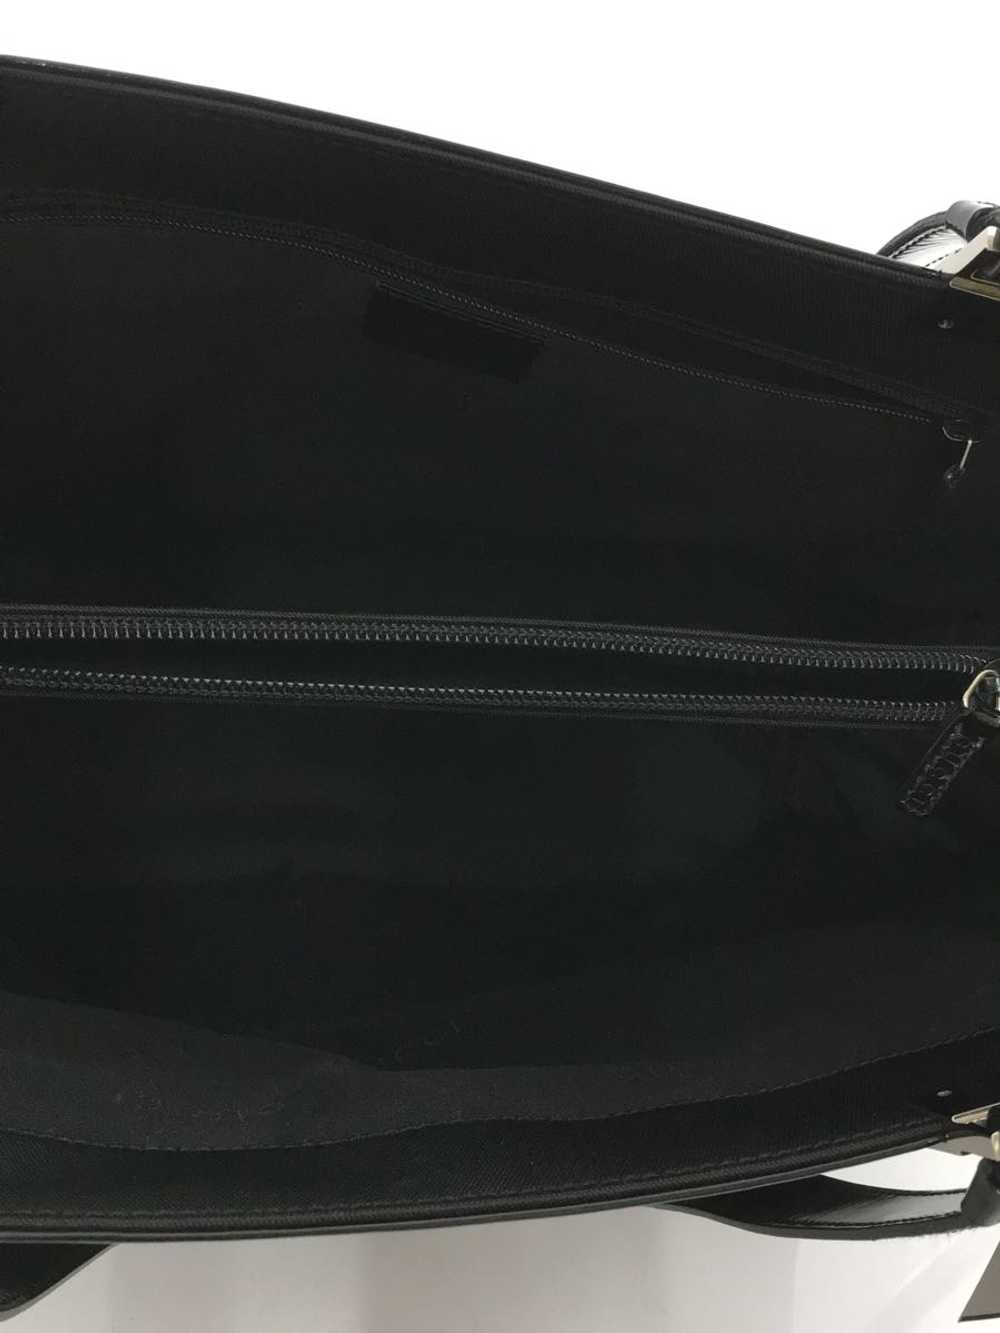 [Japan Used Bag] Used Gucci Tote Bag/Nylon/Blk Bag - image 6